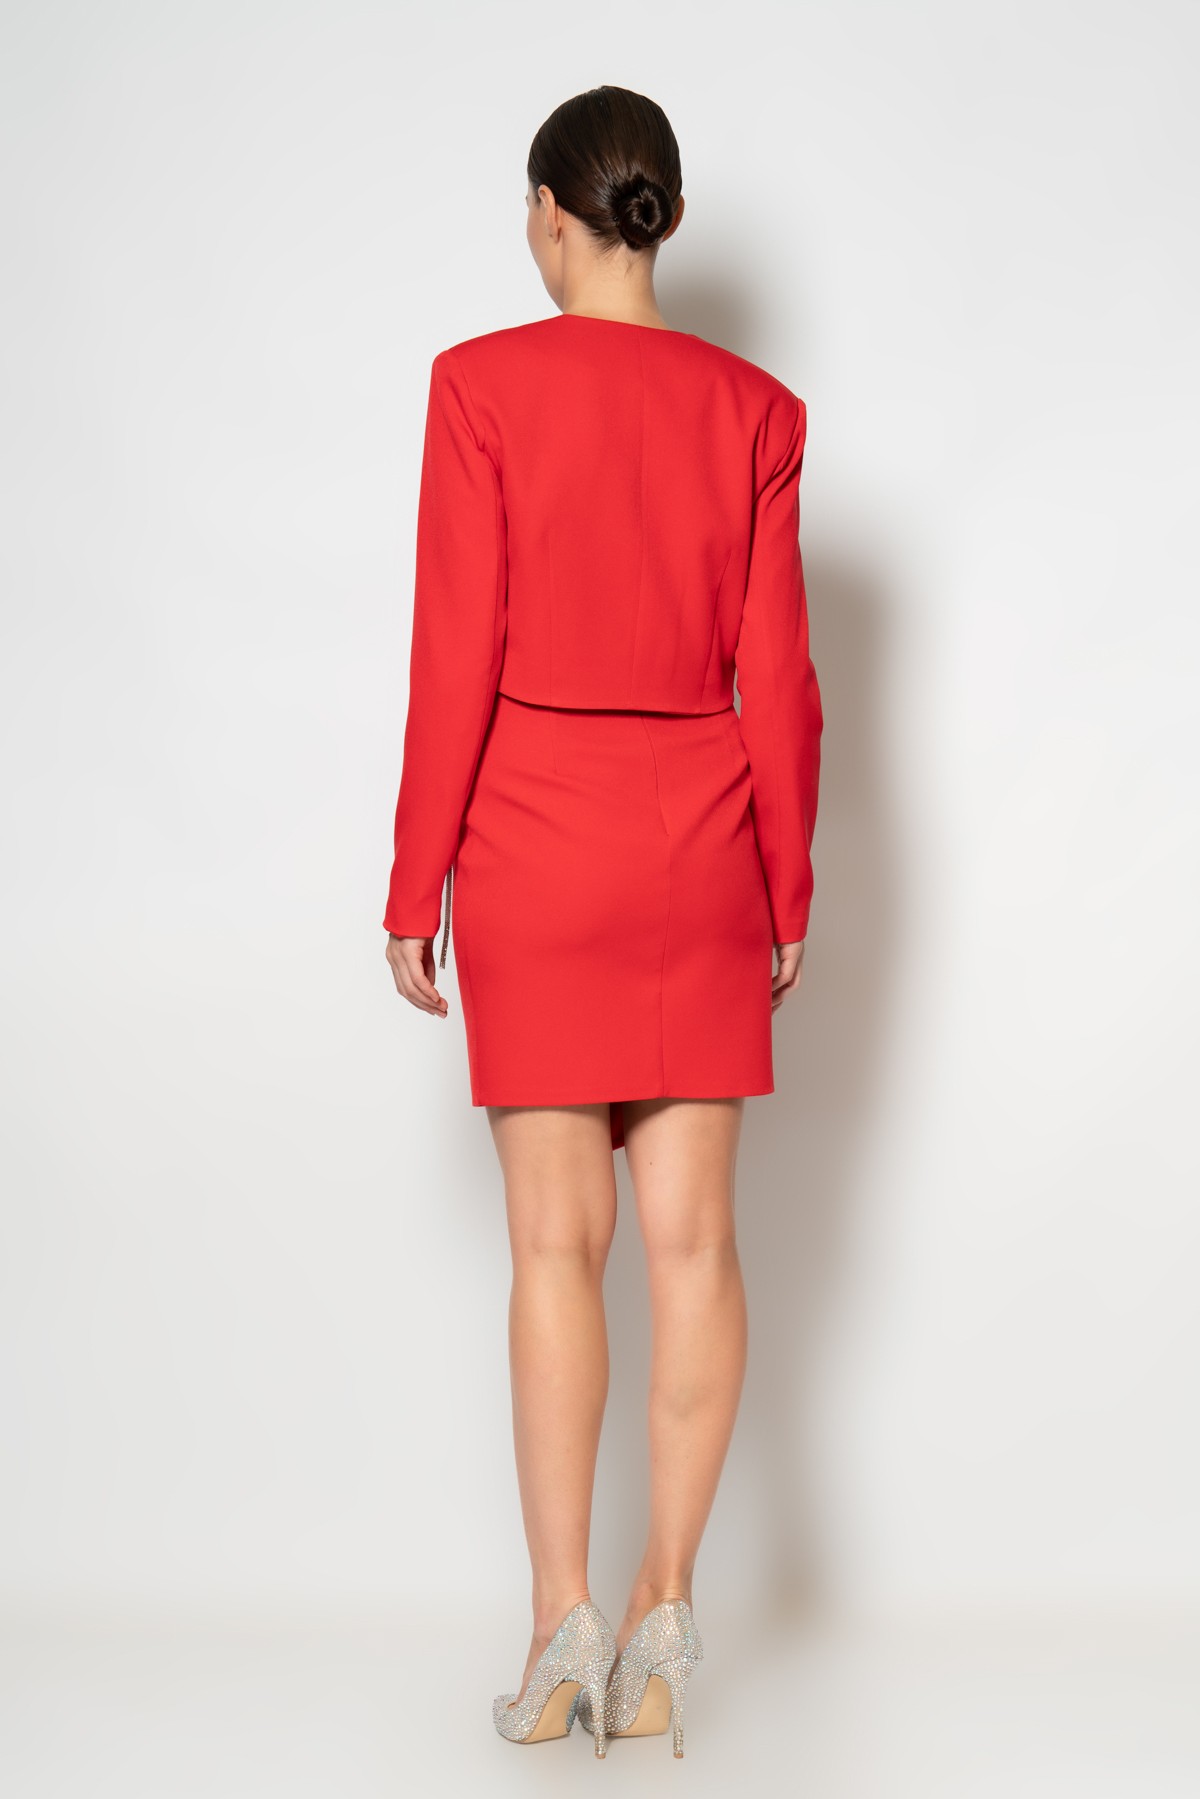 Eteği ve göğsü taş şerit halatlı ceket elbise krep ikili abiye takım - Kırmızı